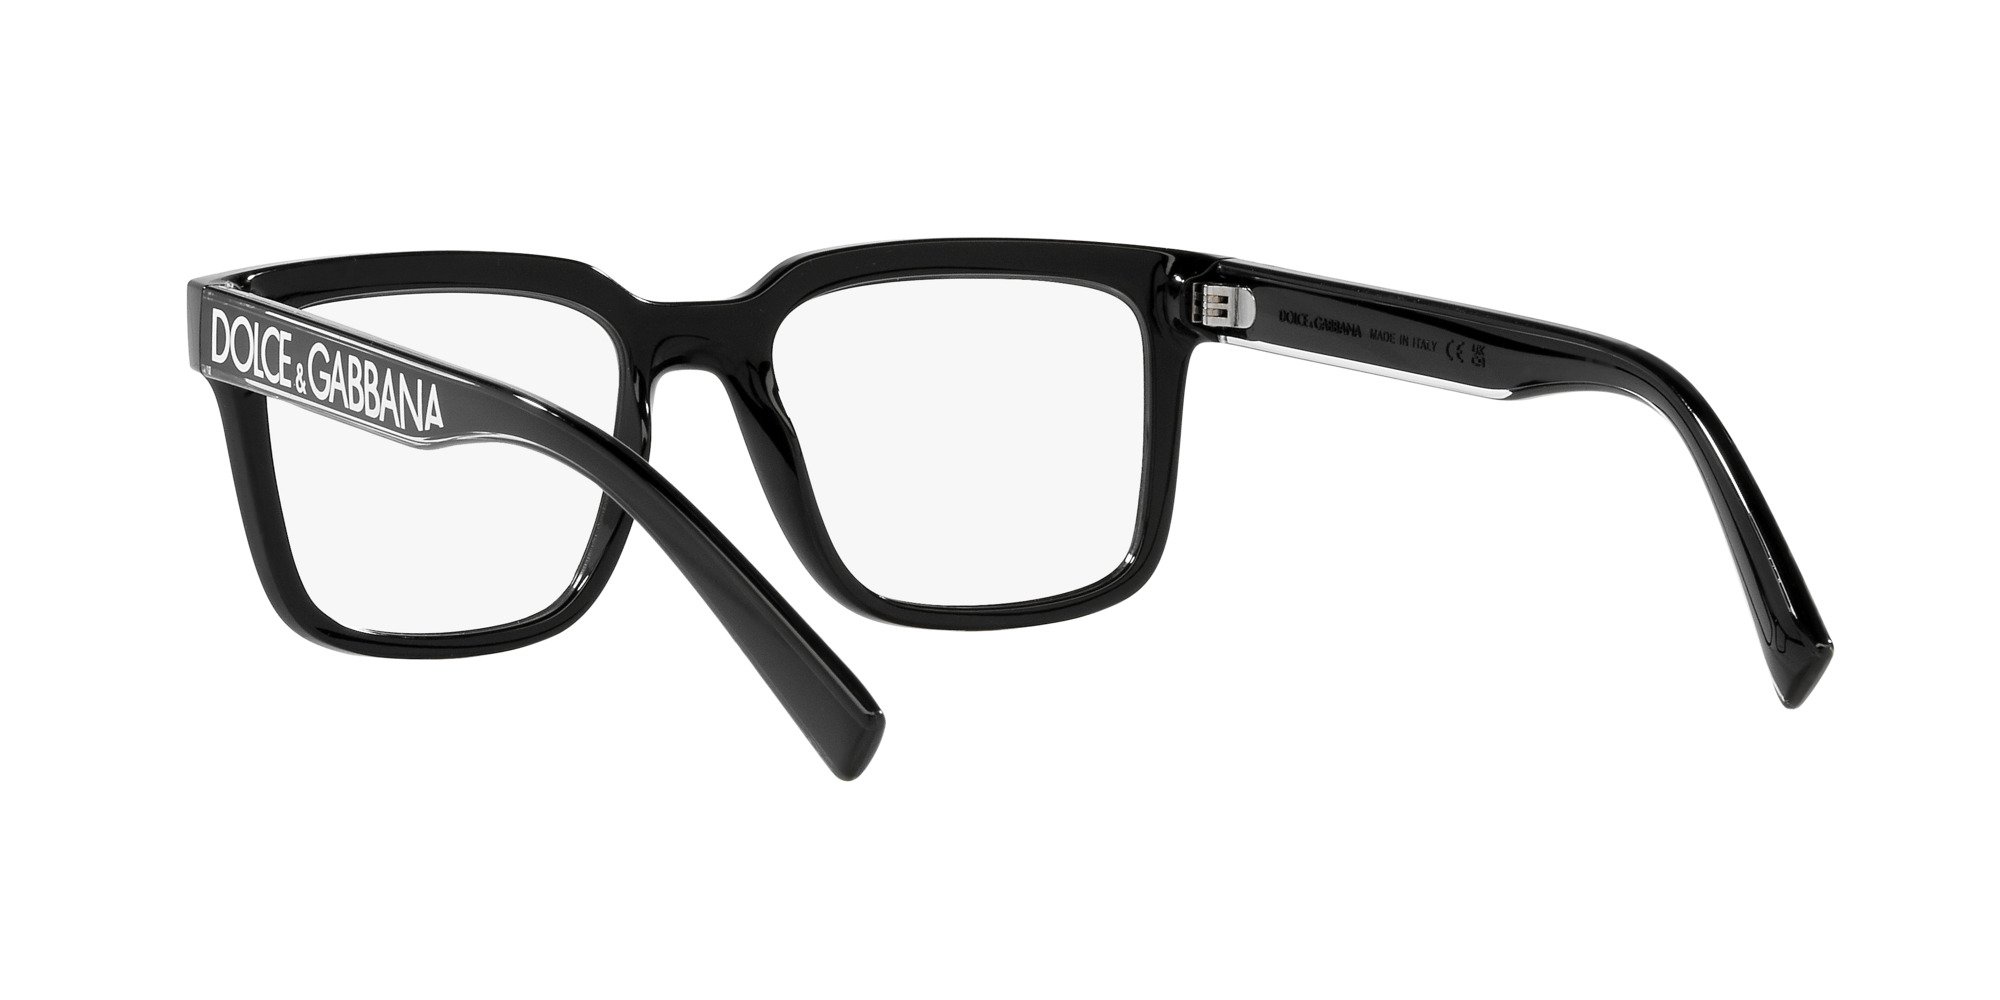 Das Bild zeigt die Korrektionsbrille DG5101 501 von der Marke D&G in schwarz.